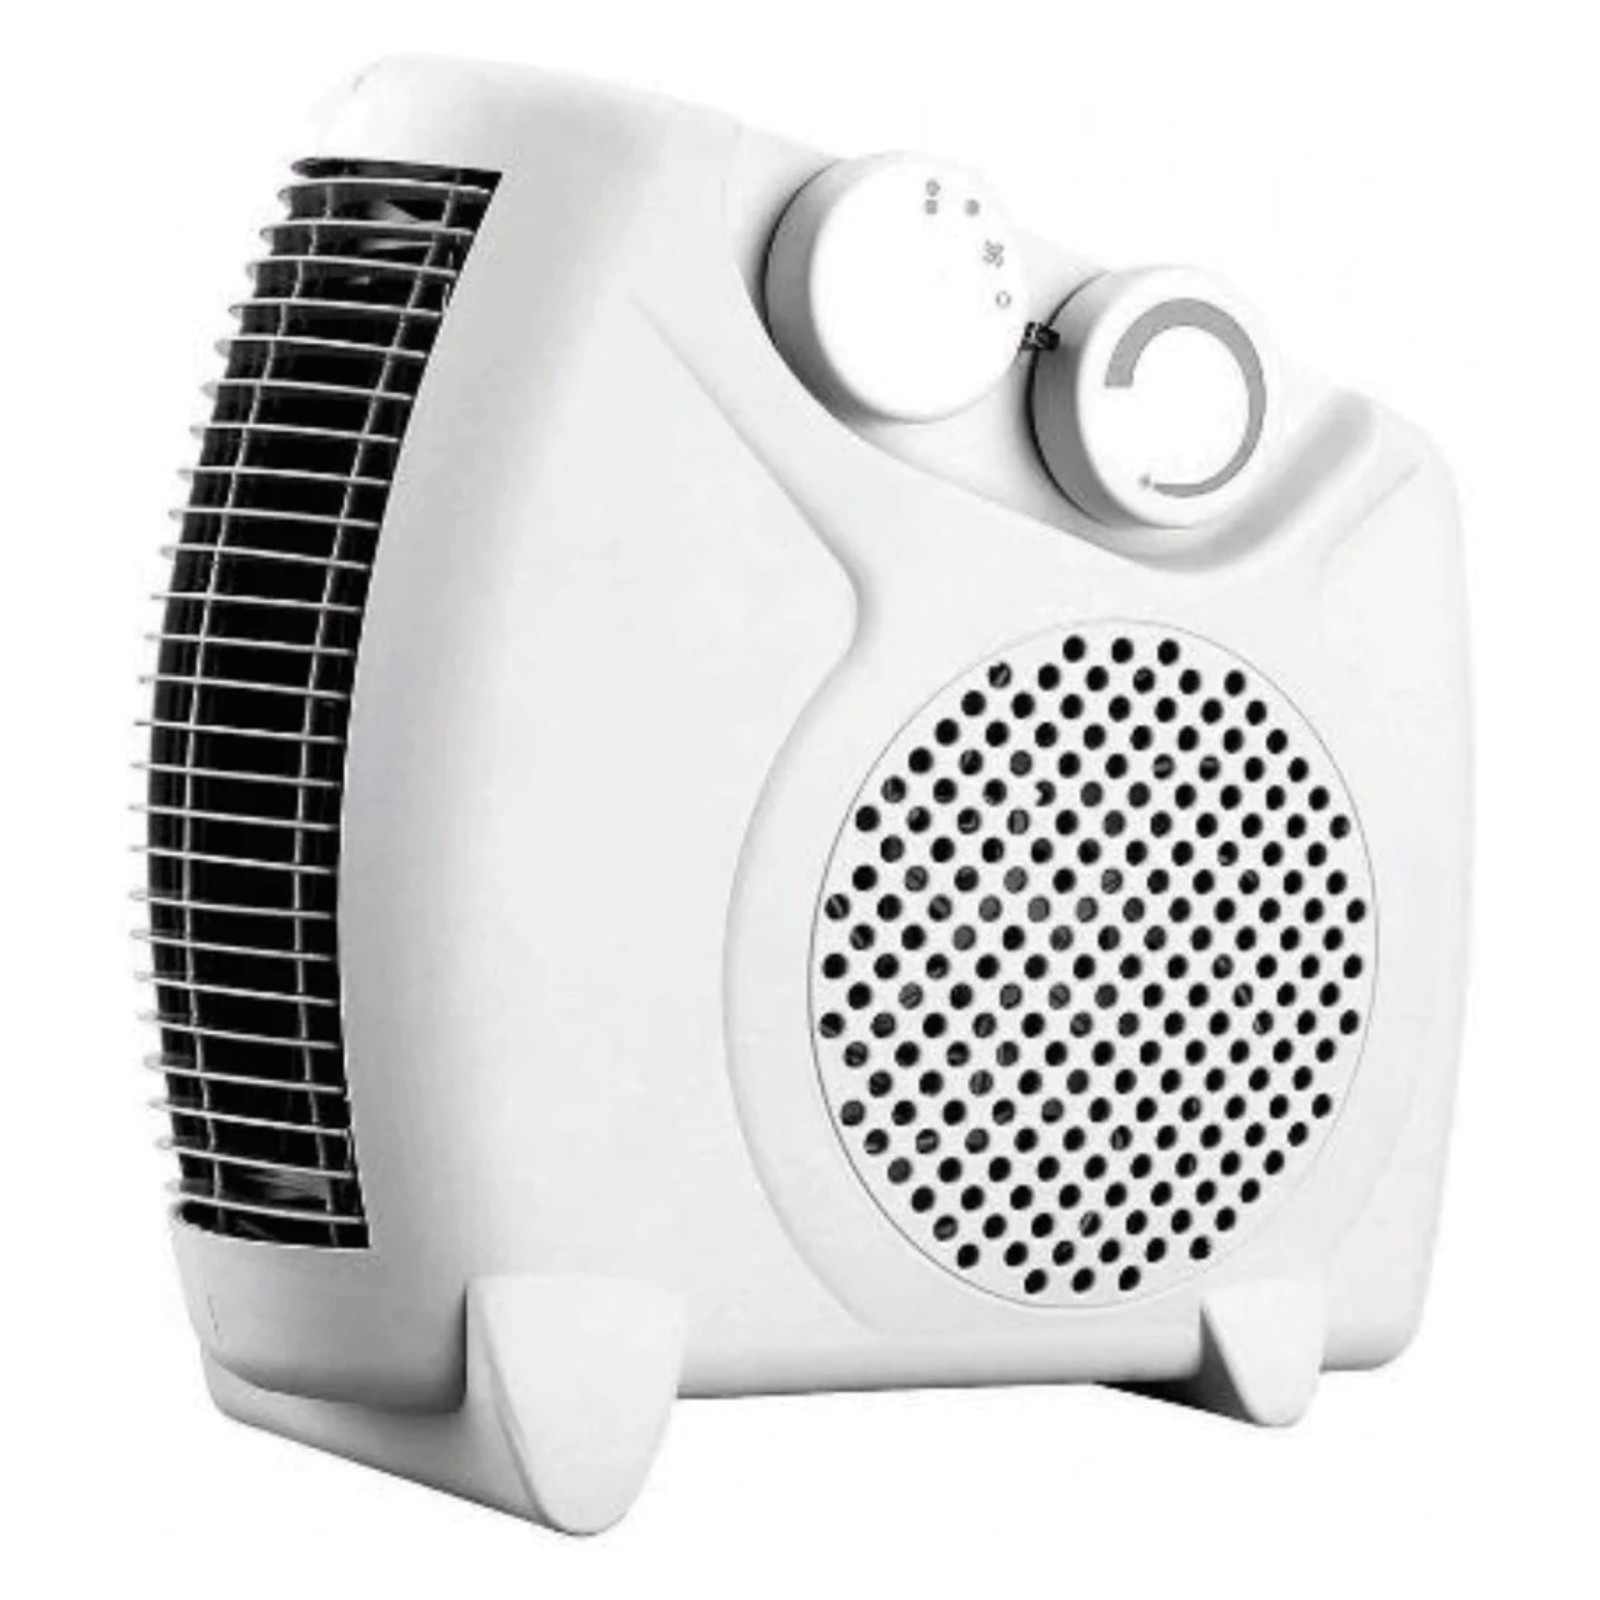 Fine Elements Heater Dual Position, Electric Fan Heater 2000W White HEA1007  -New